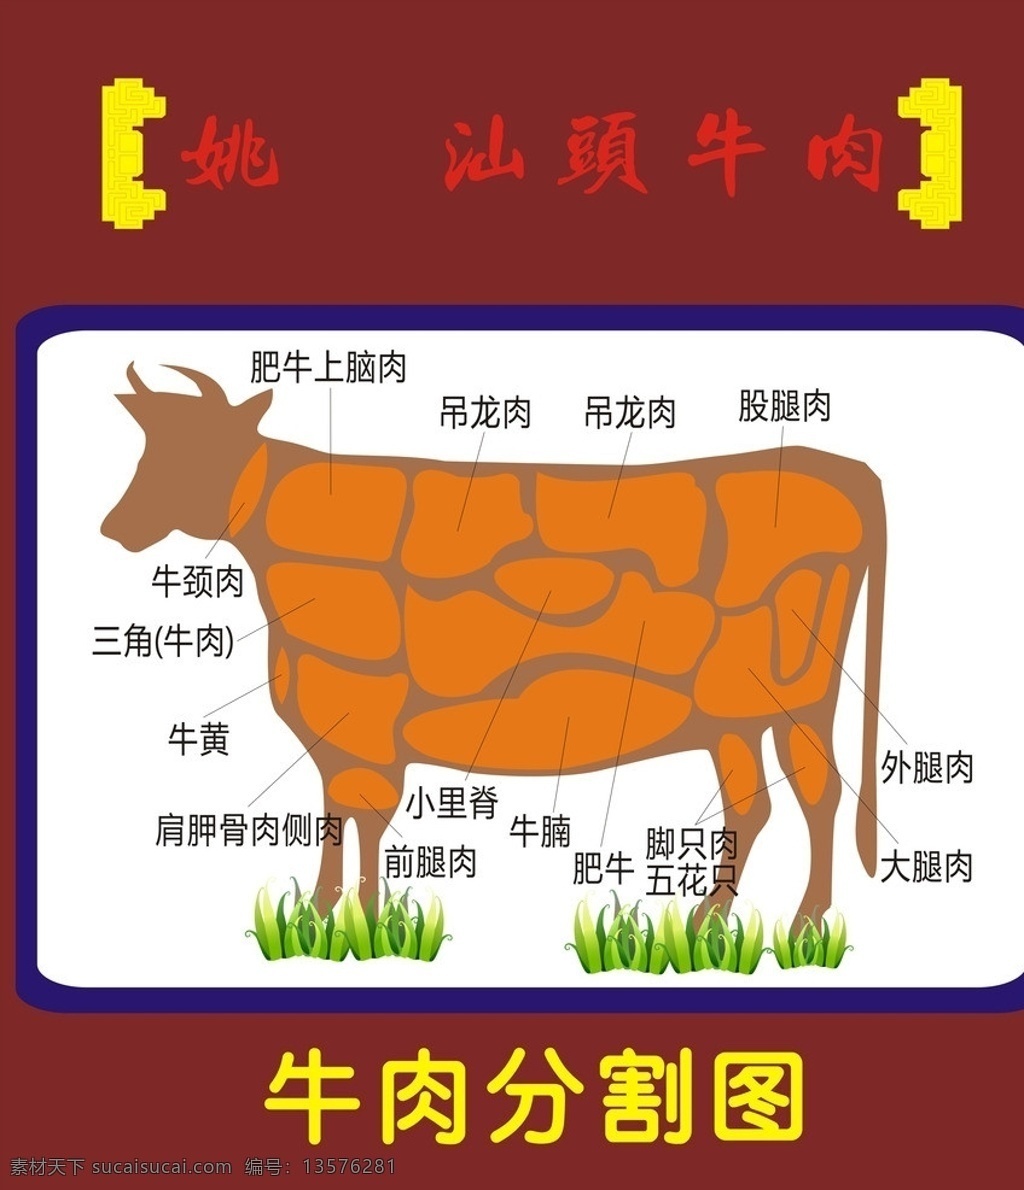 牛肉分割图 牛肉 部分 分割 火锅 其他设计 矢量